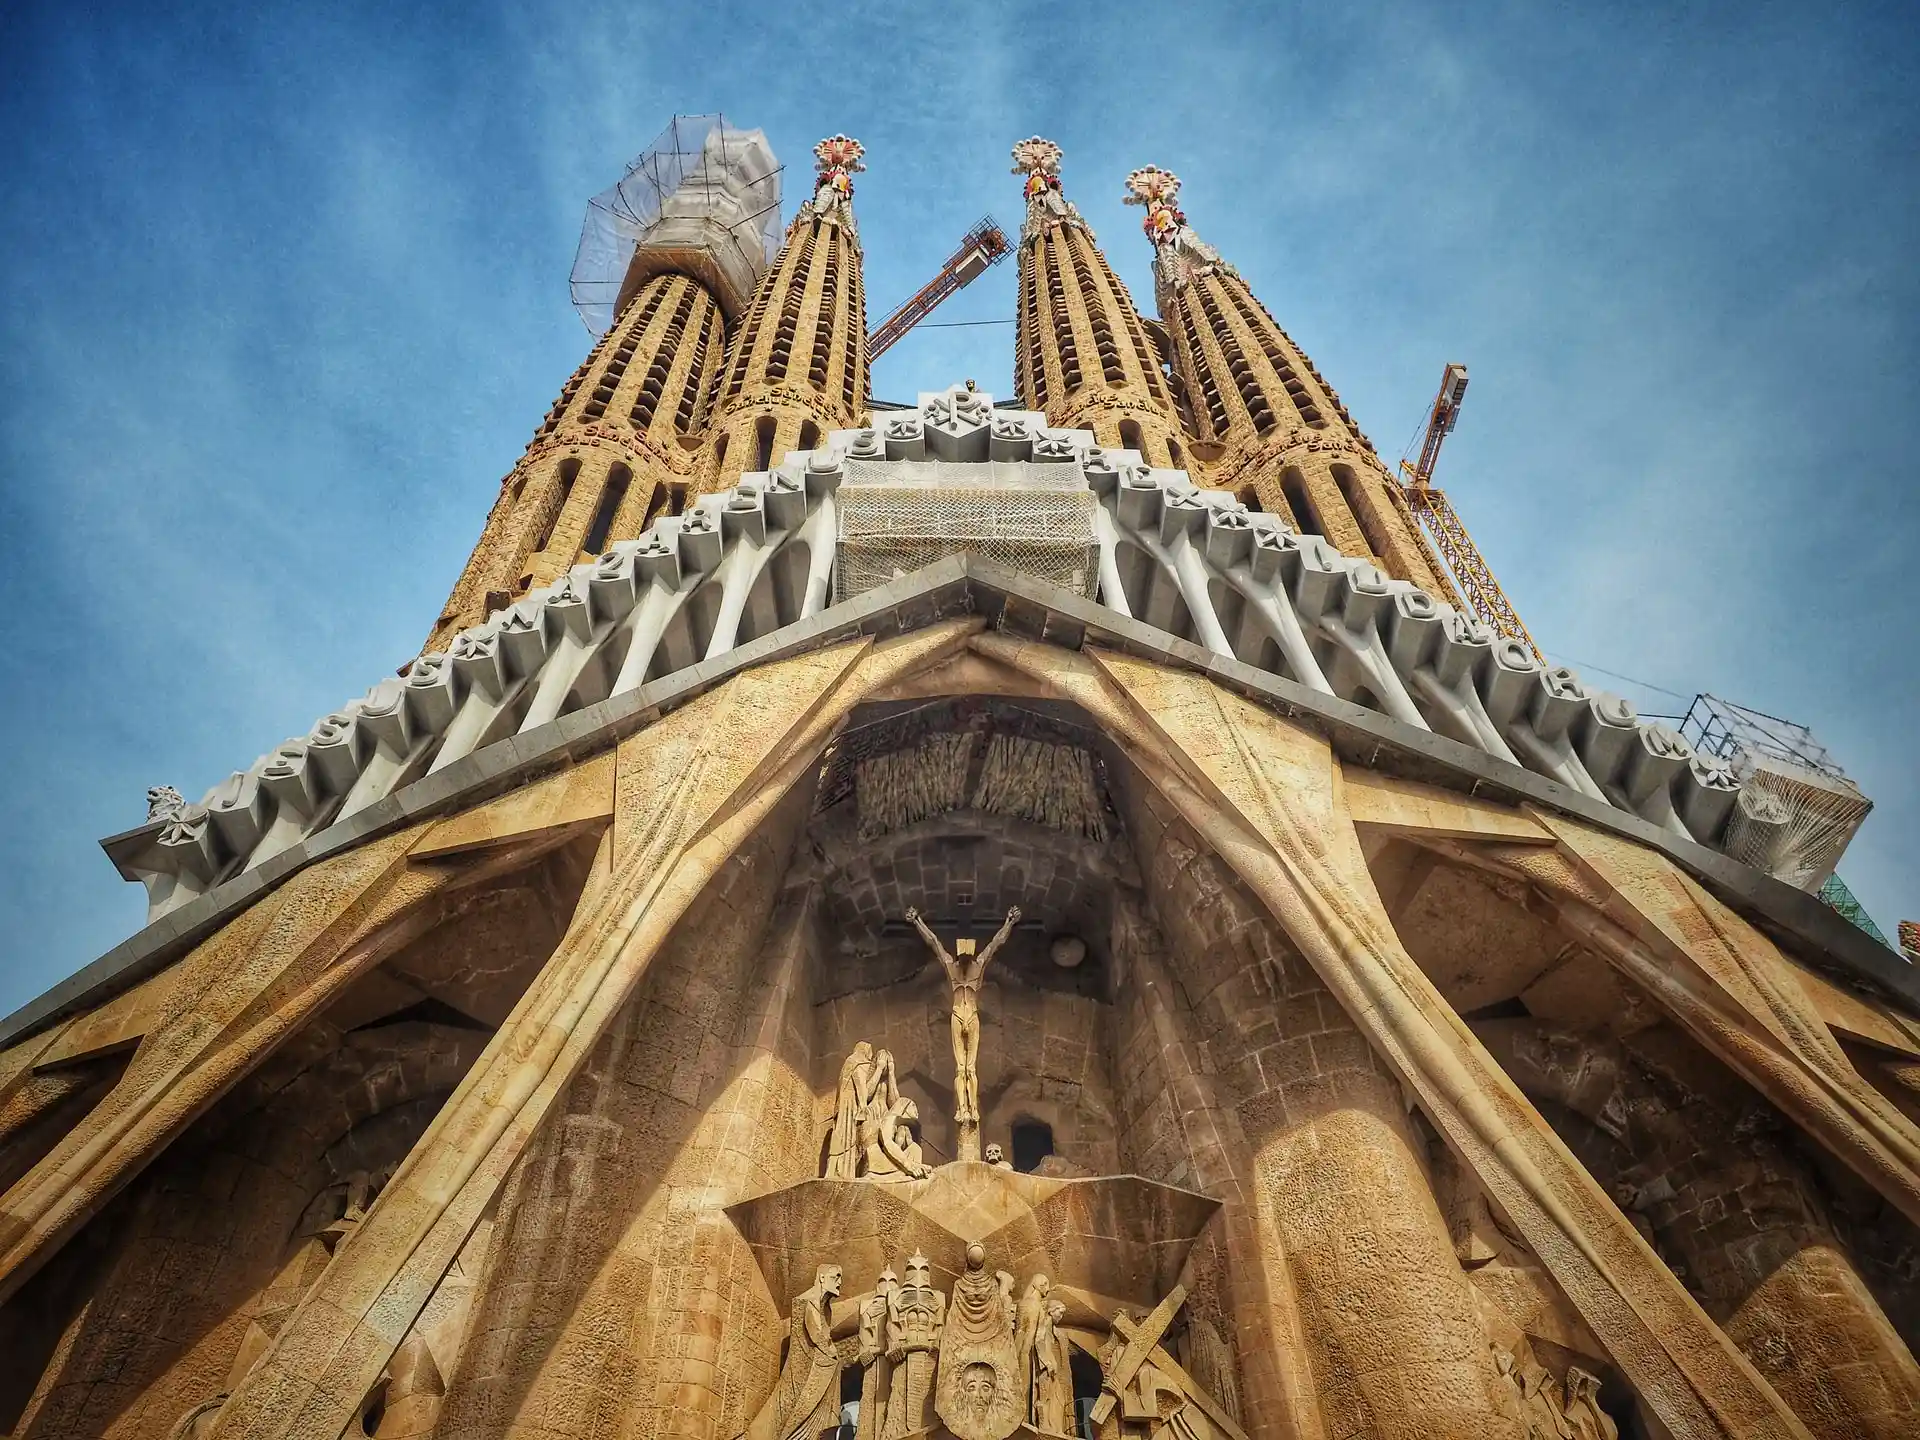 Image of La Sagrada Familia, Barcelona; Photo by Sung Jin Cho on Unsplash